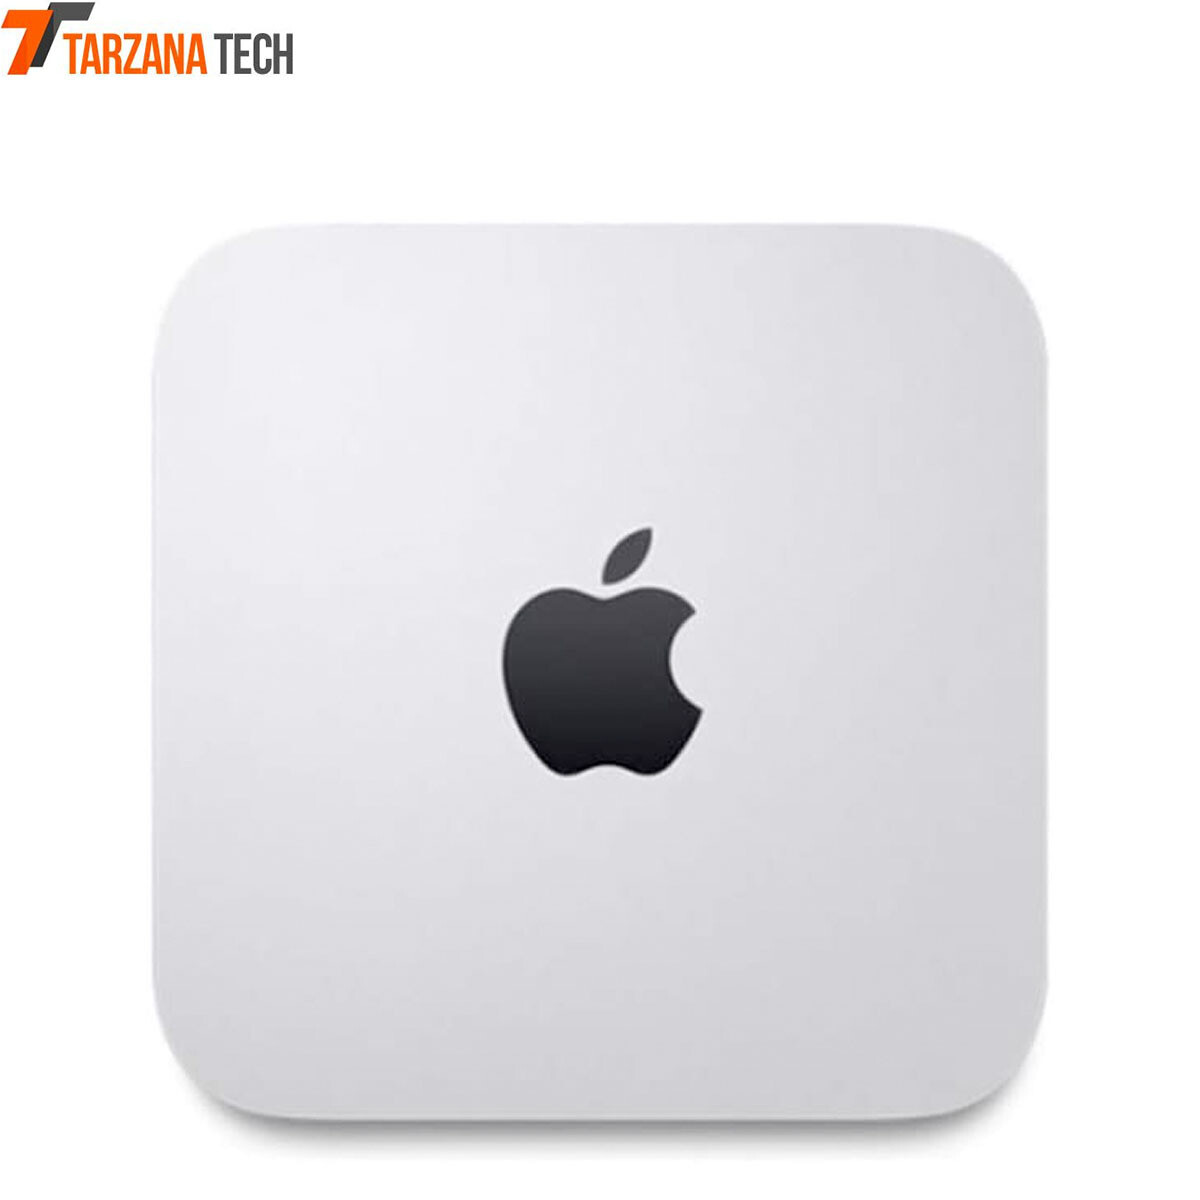 Apple Mac Mini Intel Core i5 1.4GHz